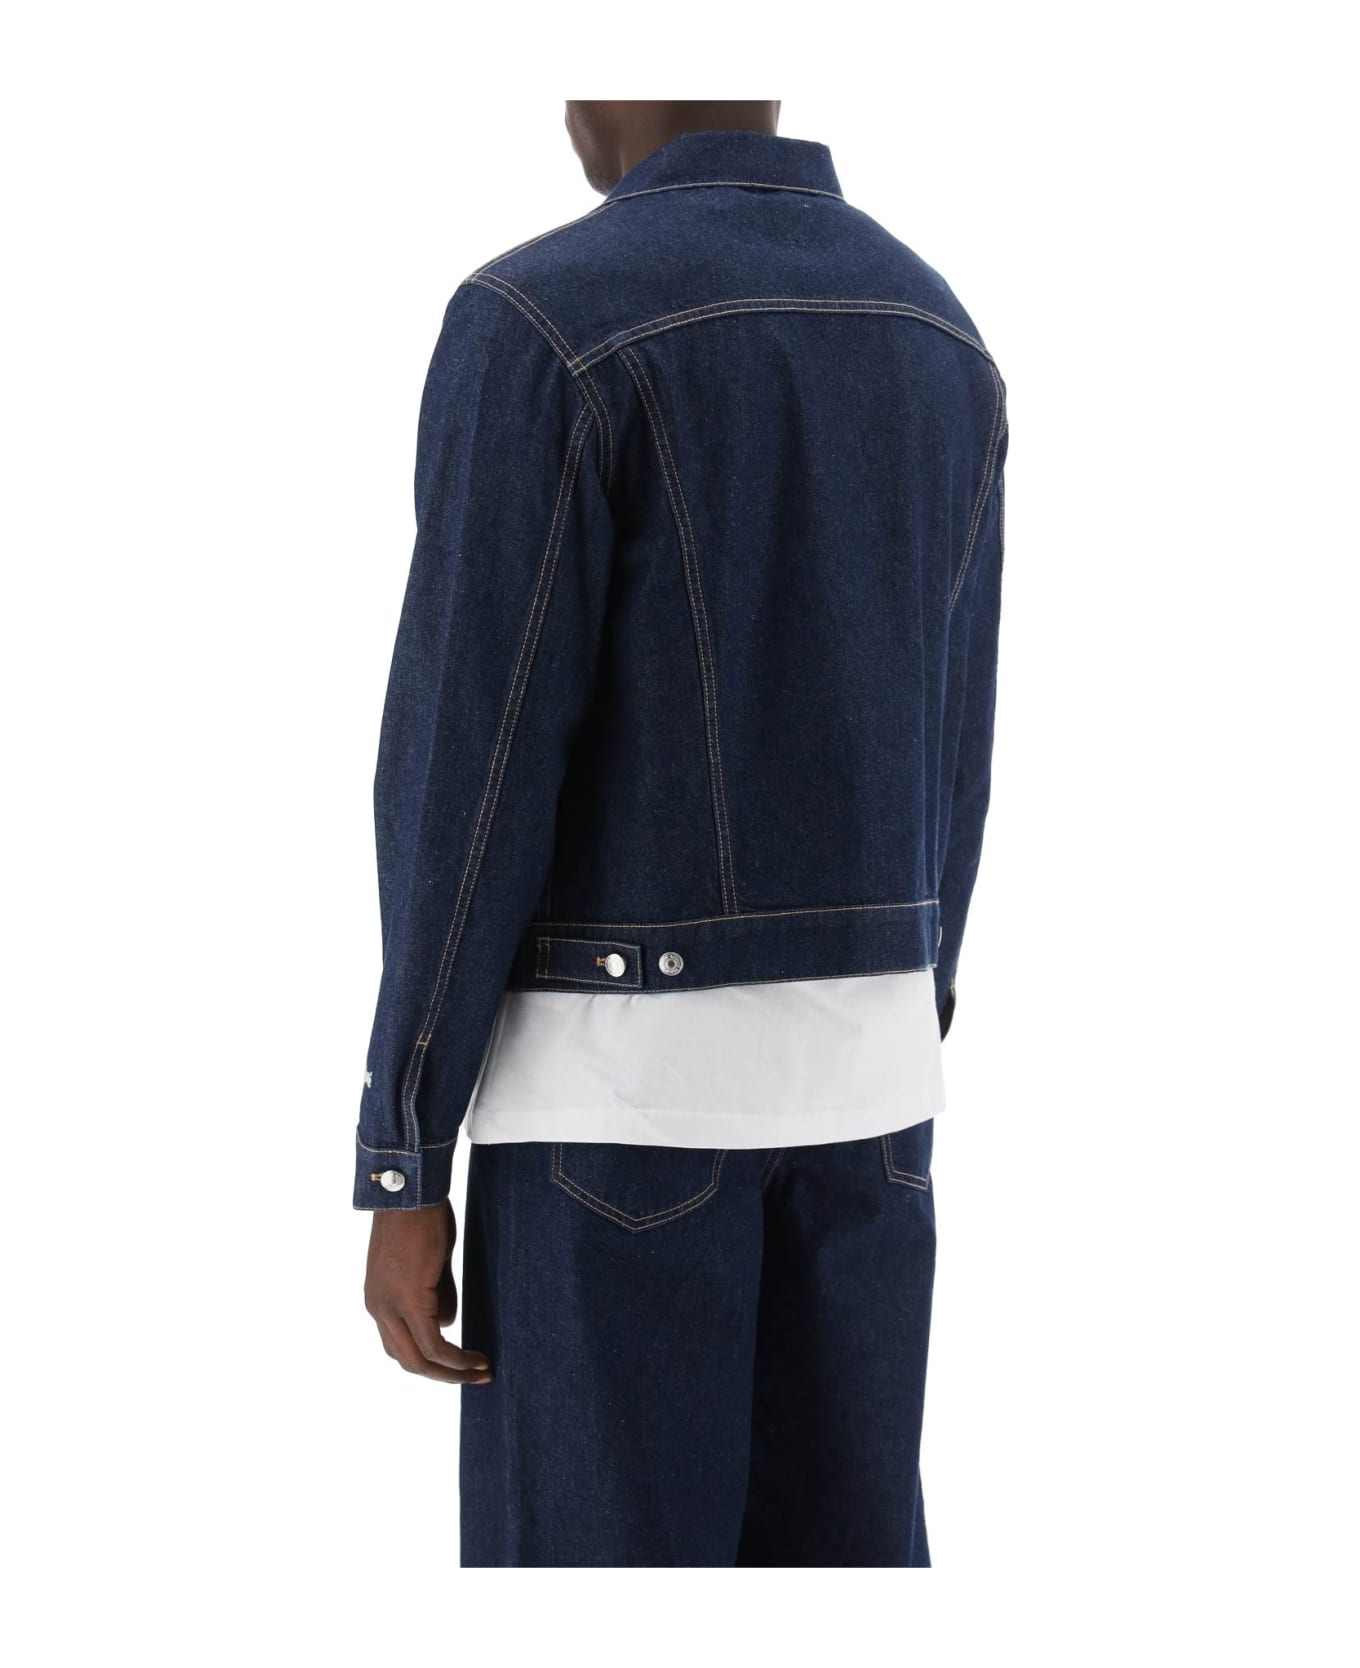 Maison Kitsuné Light Denim Jacket - WASHED INDIGO (Blue) ジャケット